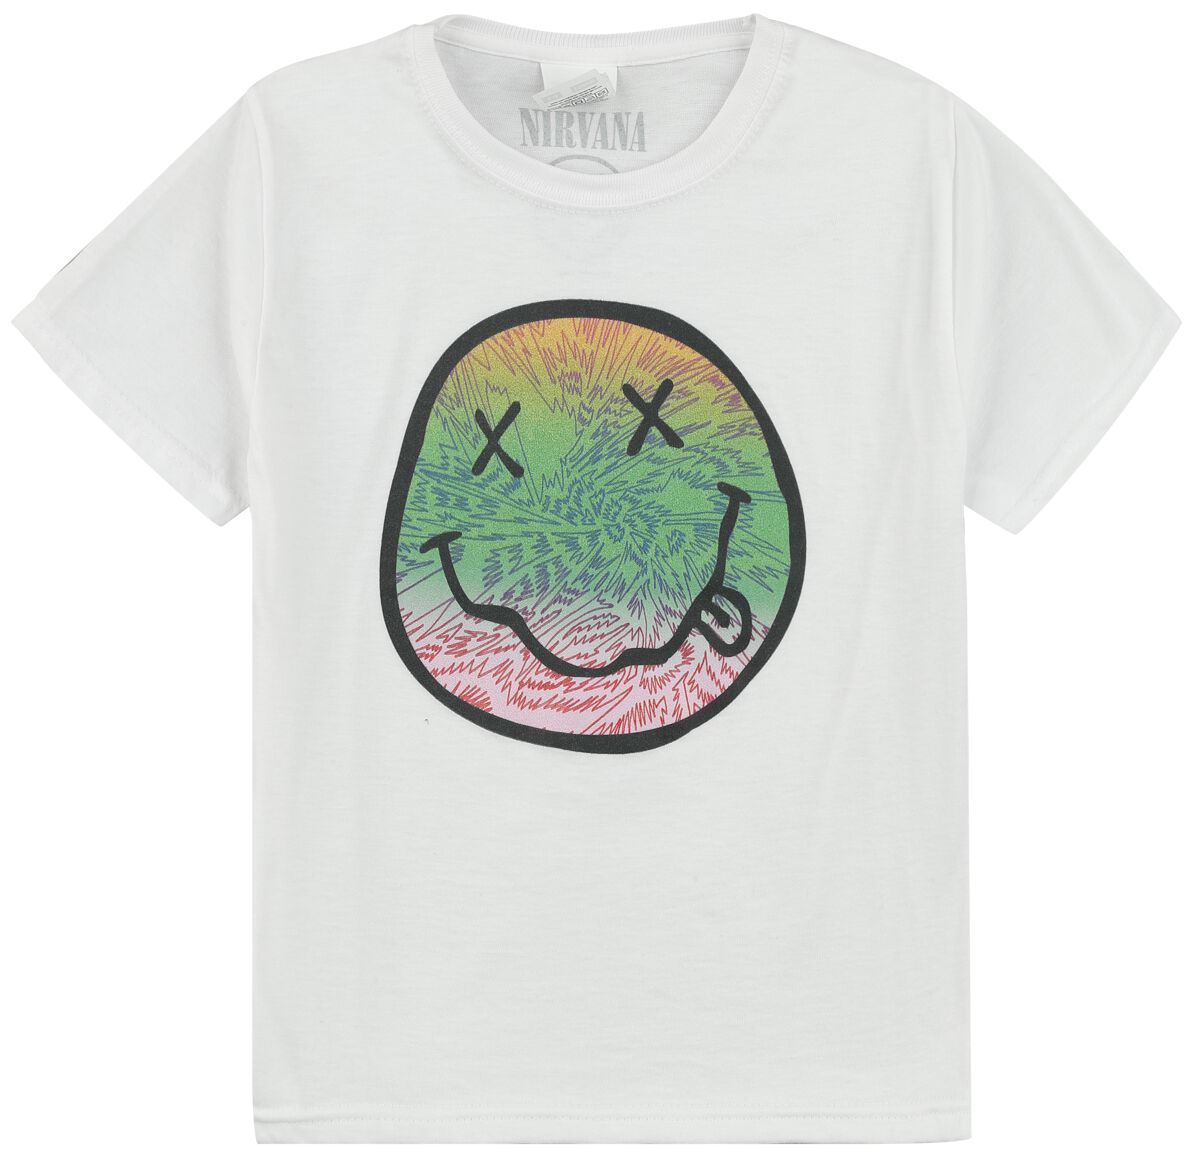 Nirvana T-Shirt für Kleinkinder - Kids - Multicolor Smiley - für Mädchen & Jungen - weiß  - Lizenziertes Merchandise!